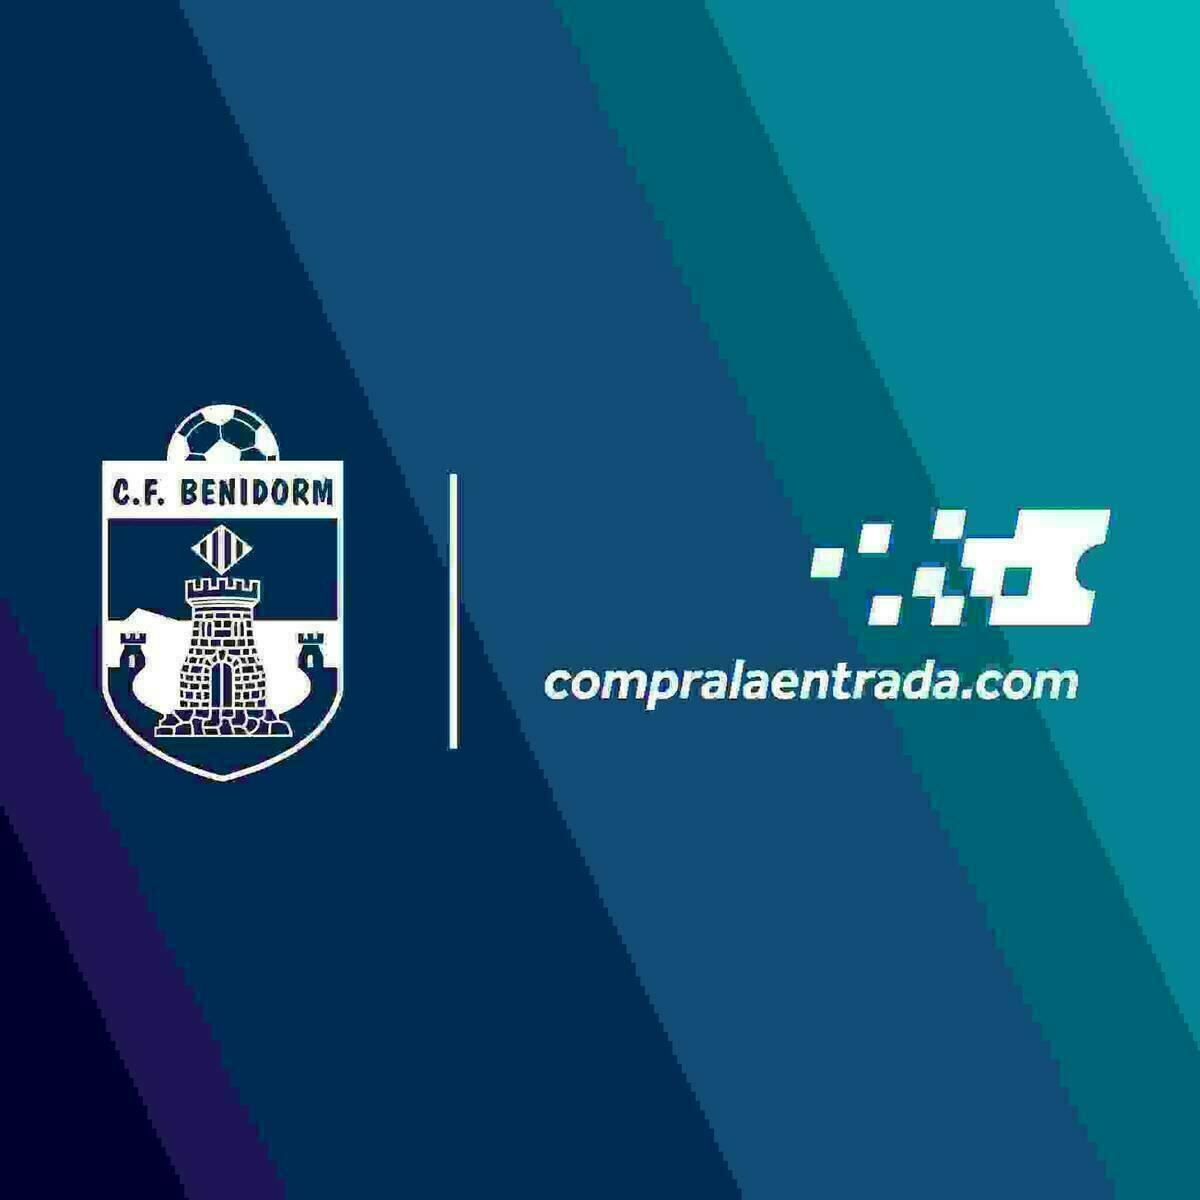 COMPROLAENTRADA.COM NUEVO PARTNER OFICIAL DEL CLUB DE FÚTBOL  BENIDORM